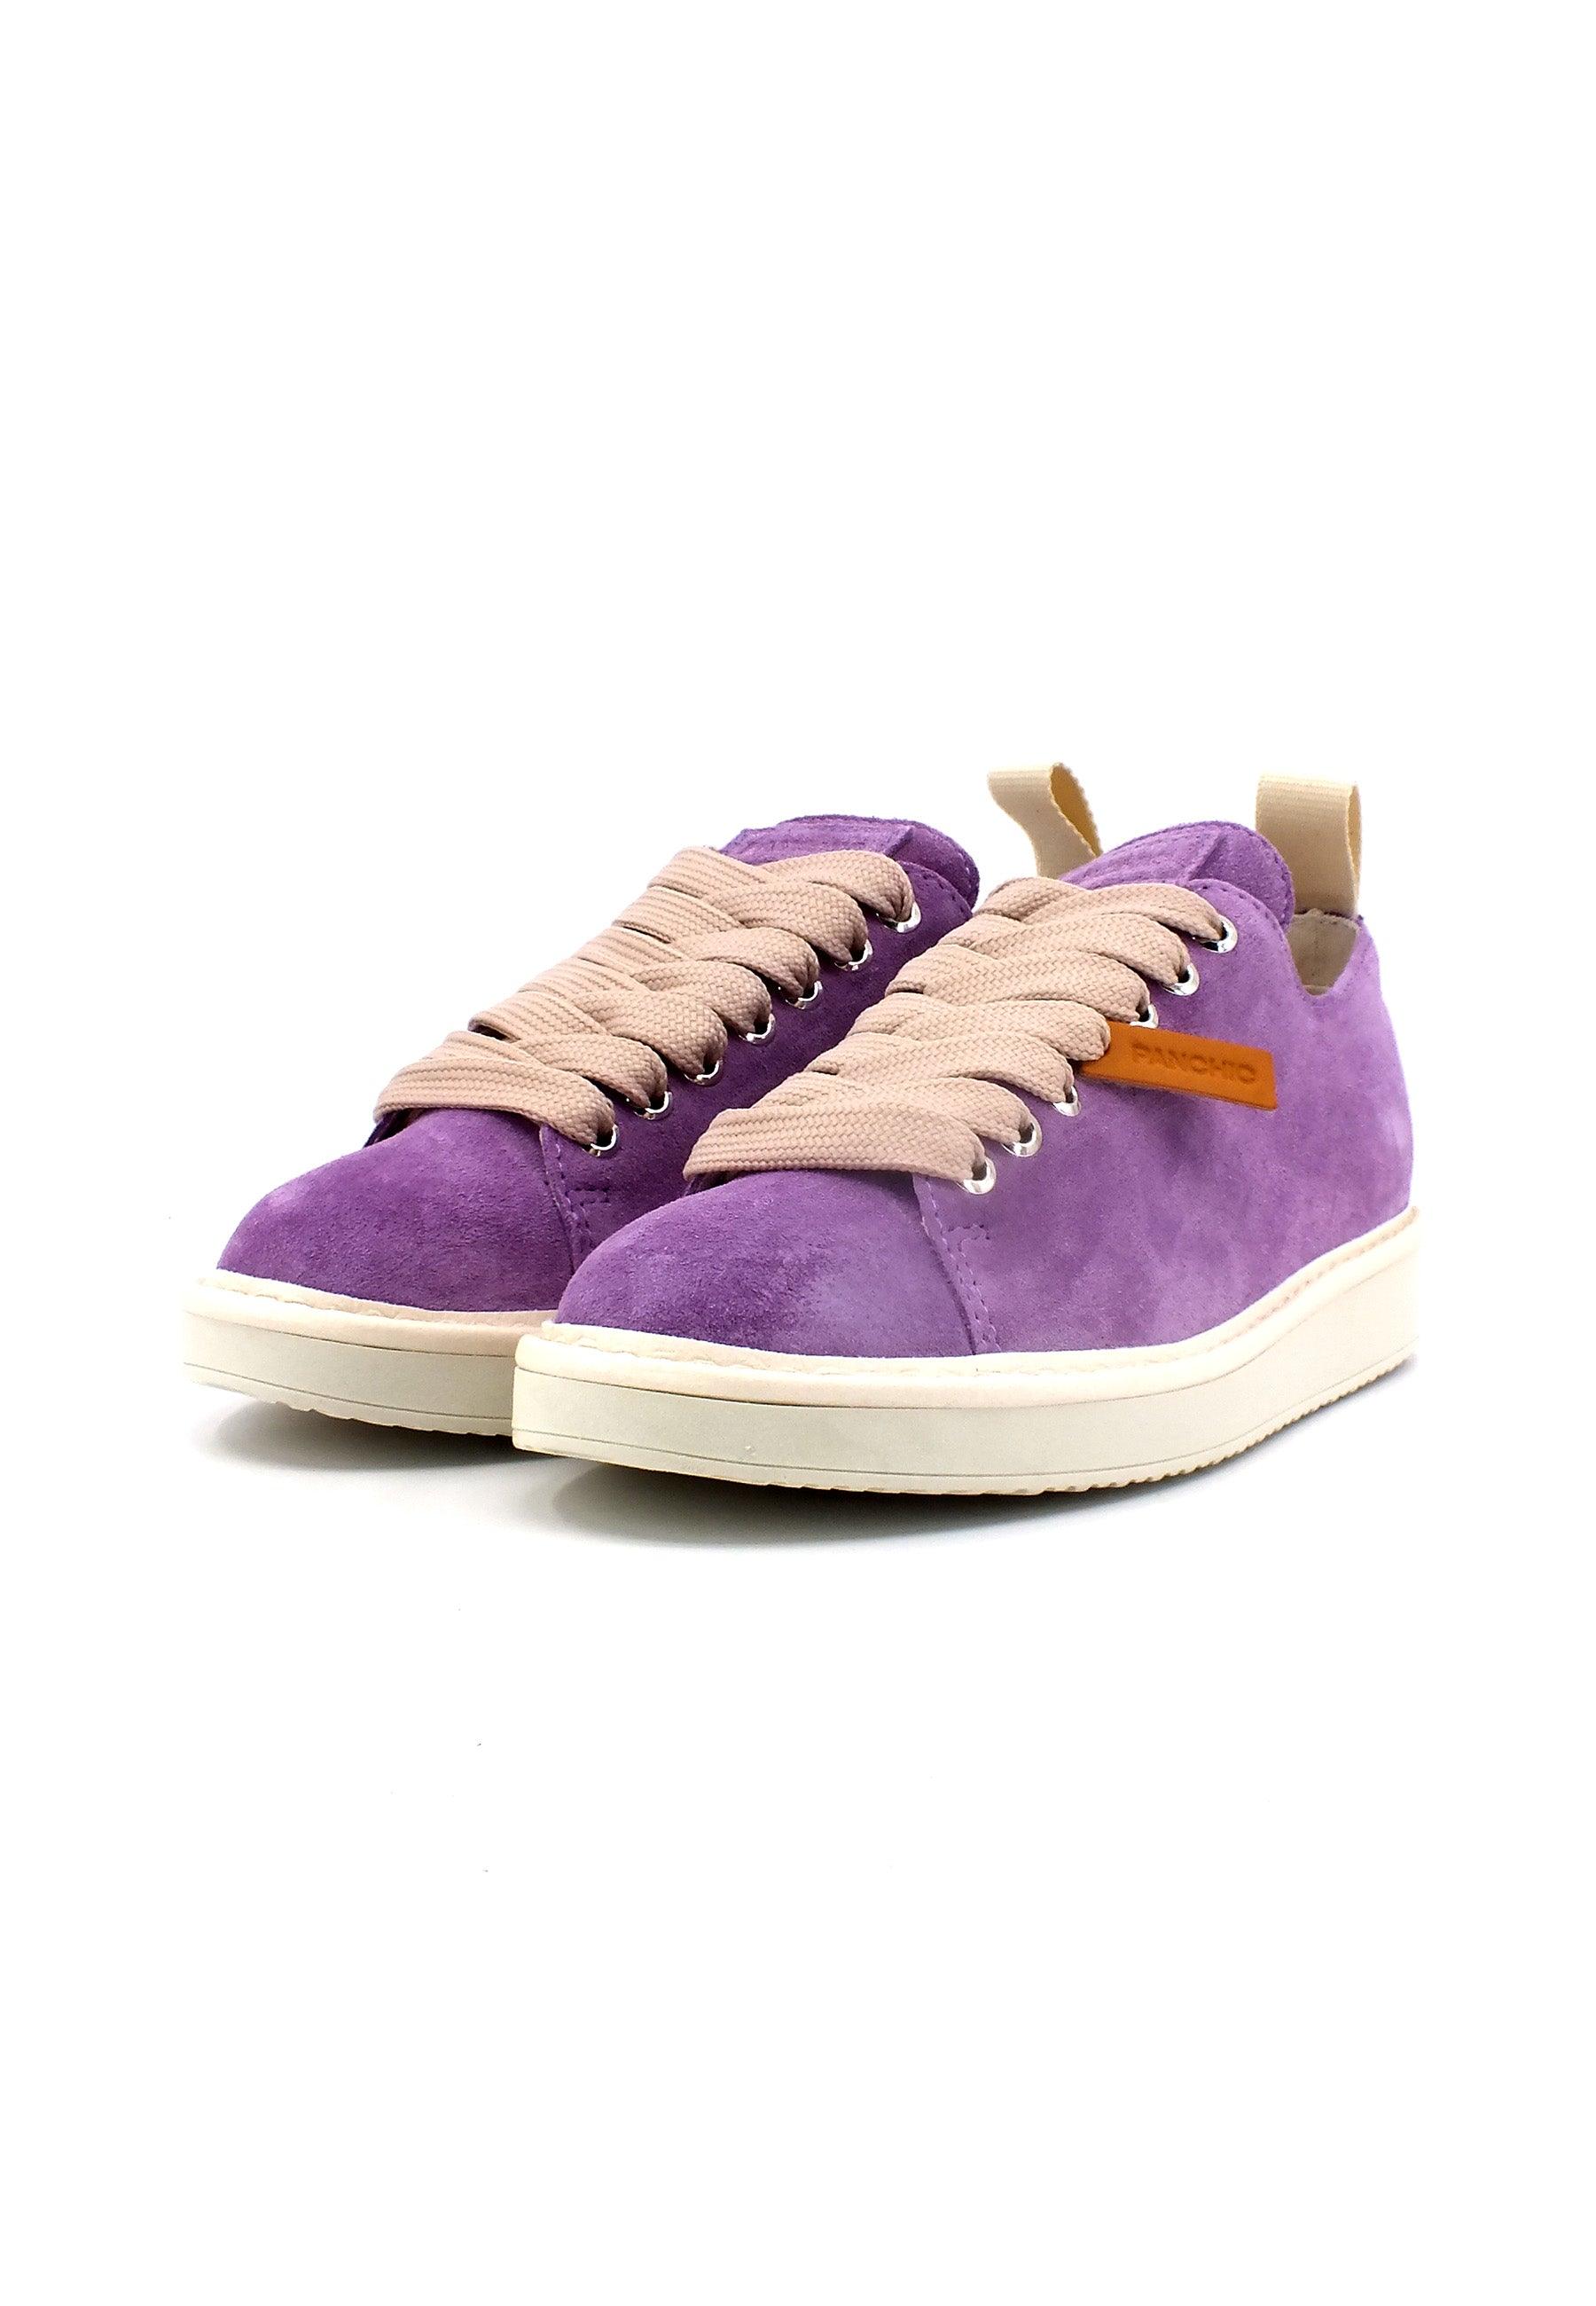 PAN CHIC Sneaker Donna Lilac Powder Pink P01W00100222012 - Sandrini Calzature e Abbigliamento